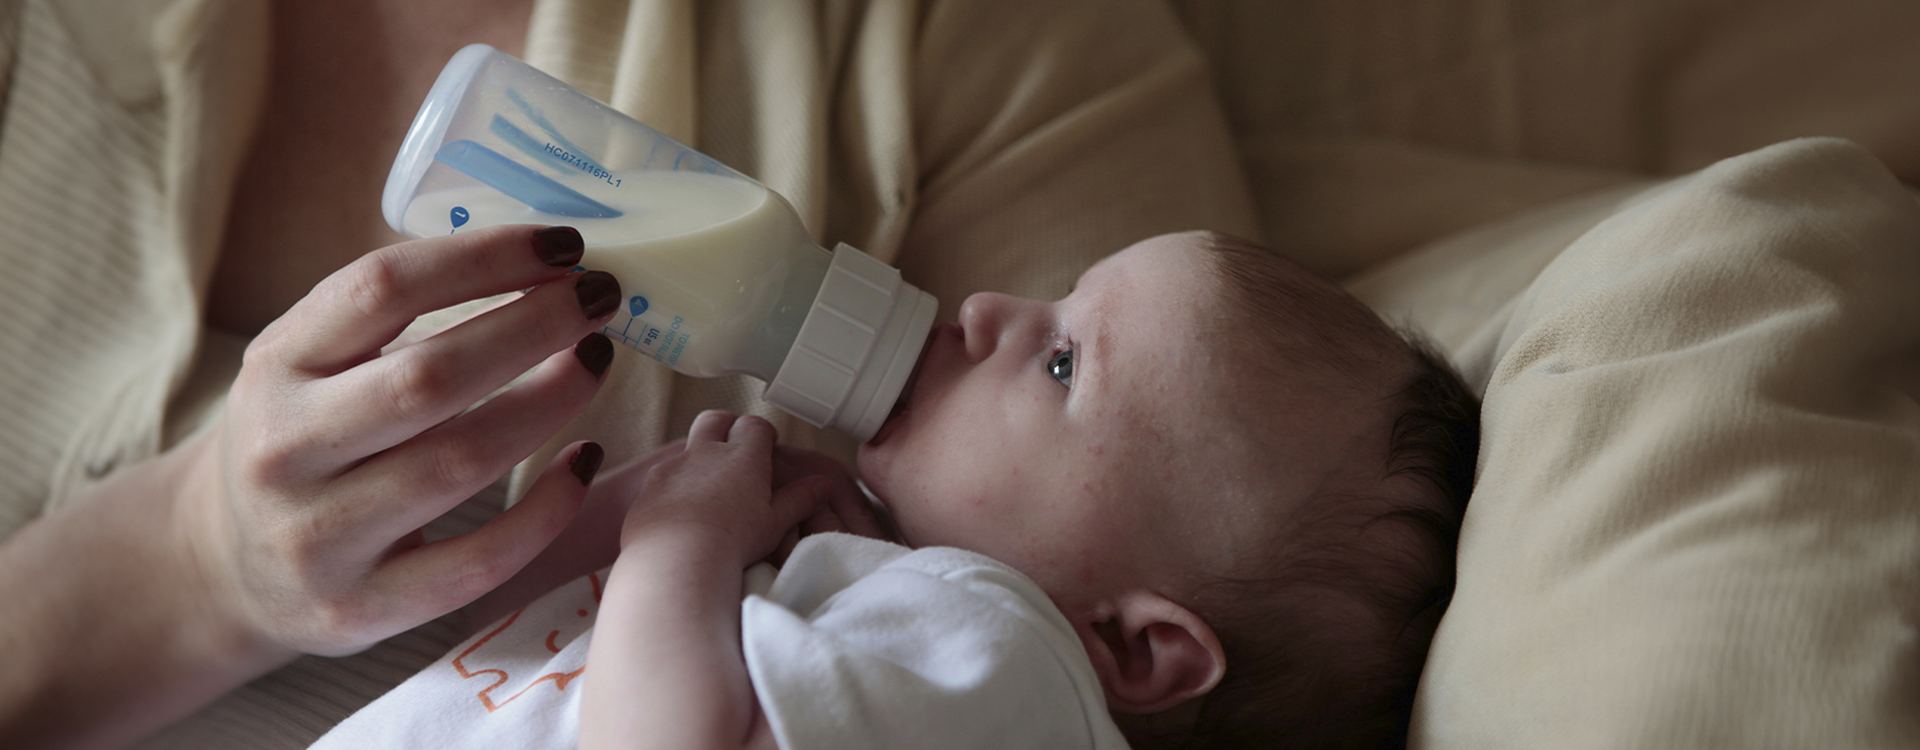 ¿Cómo esterilizar biberones de tu bebé con un esterilizador?